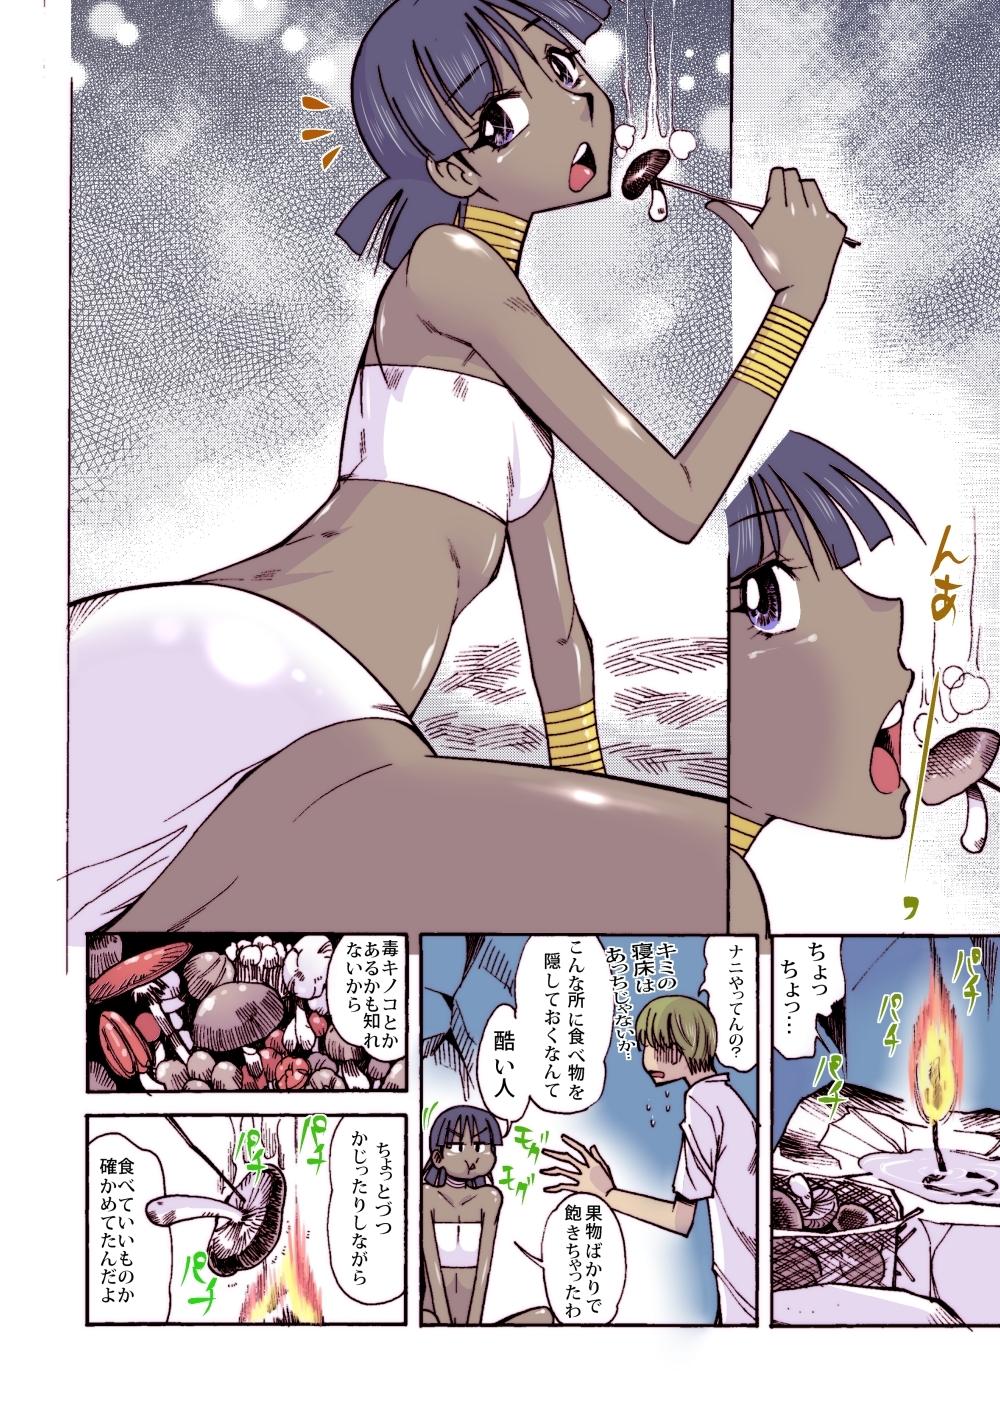 Chaturbate Nadia to Mujintou Seikatsu - Fushigi no umi no nadia Climax - Page 9